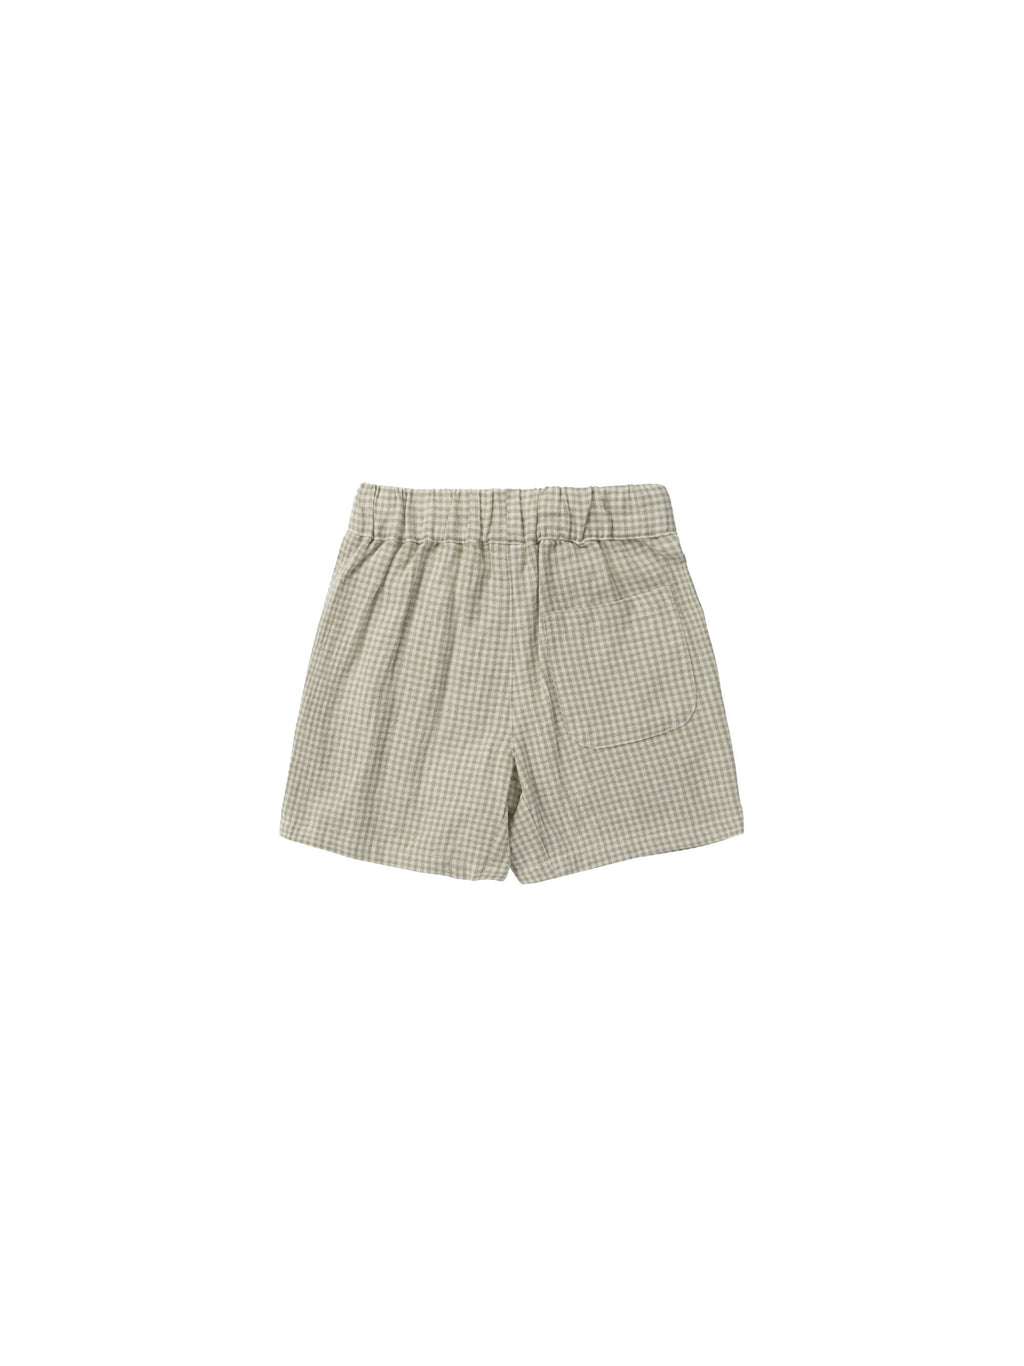 Bermuda Shorts - Sage Gingham